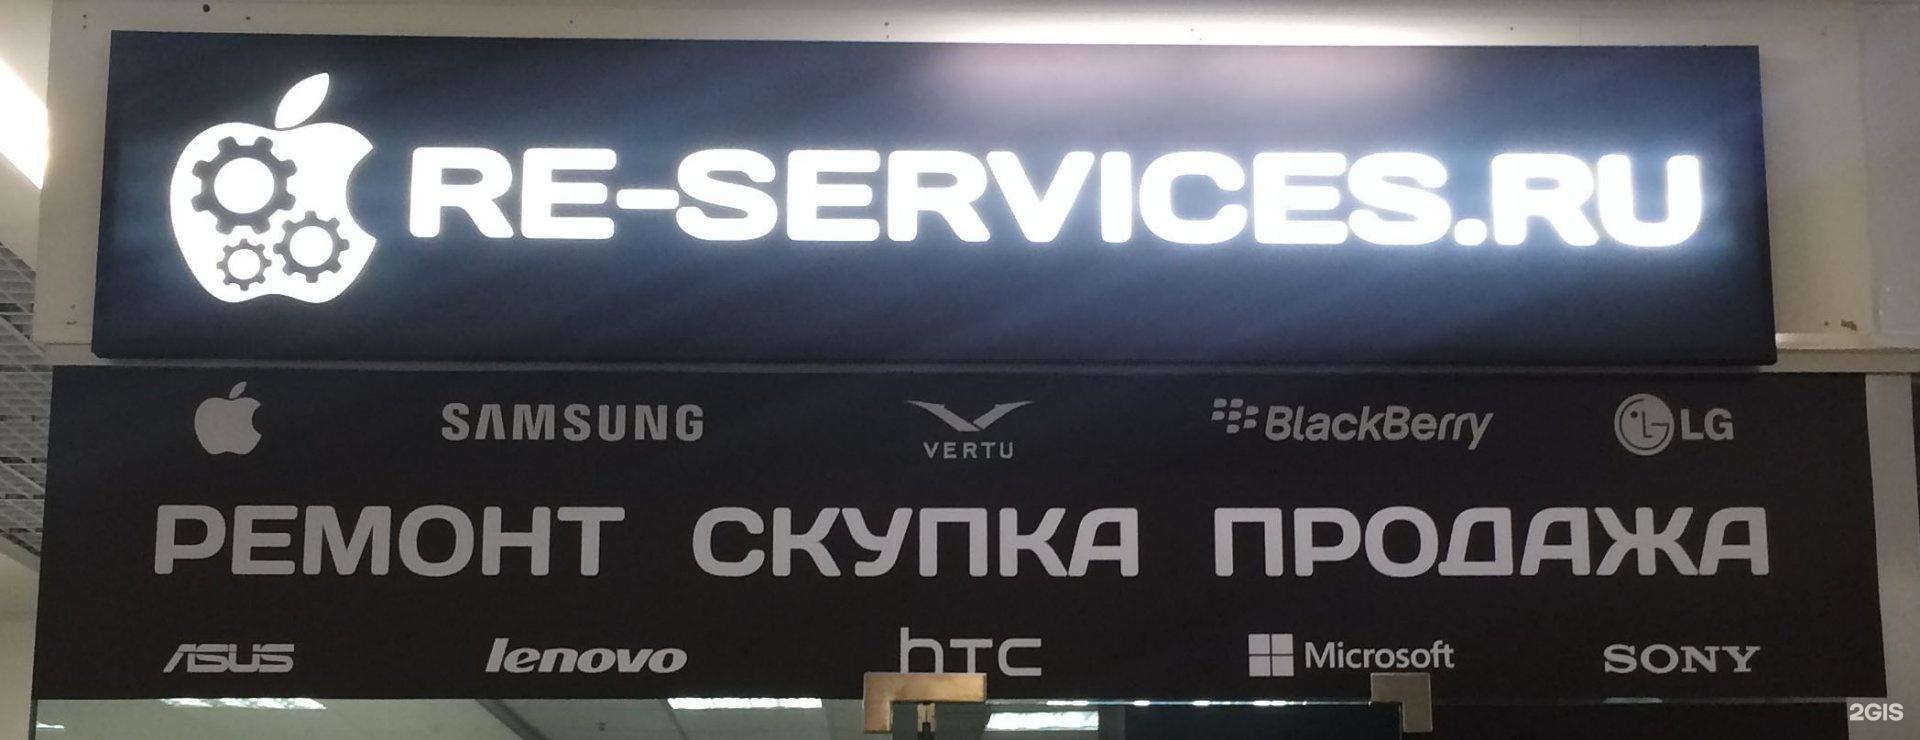 Amp service ru